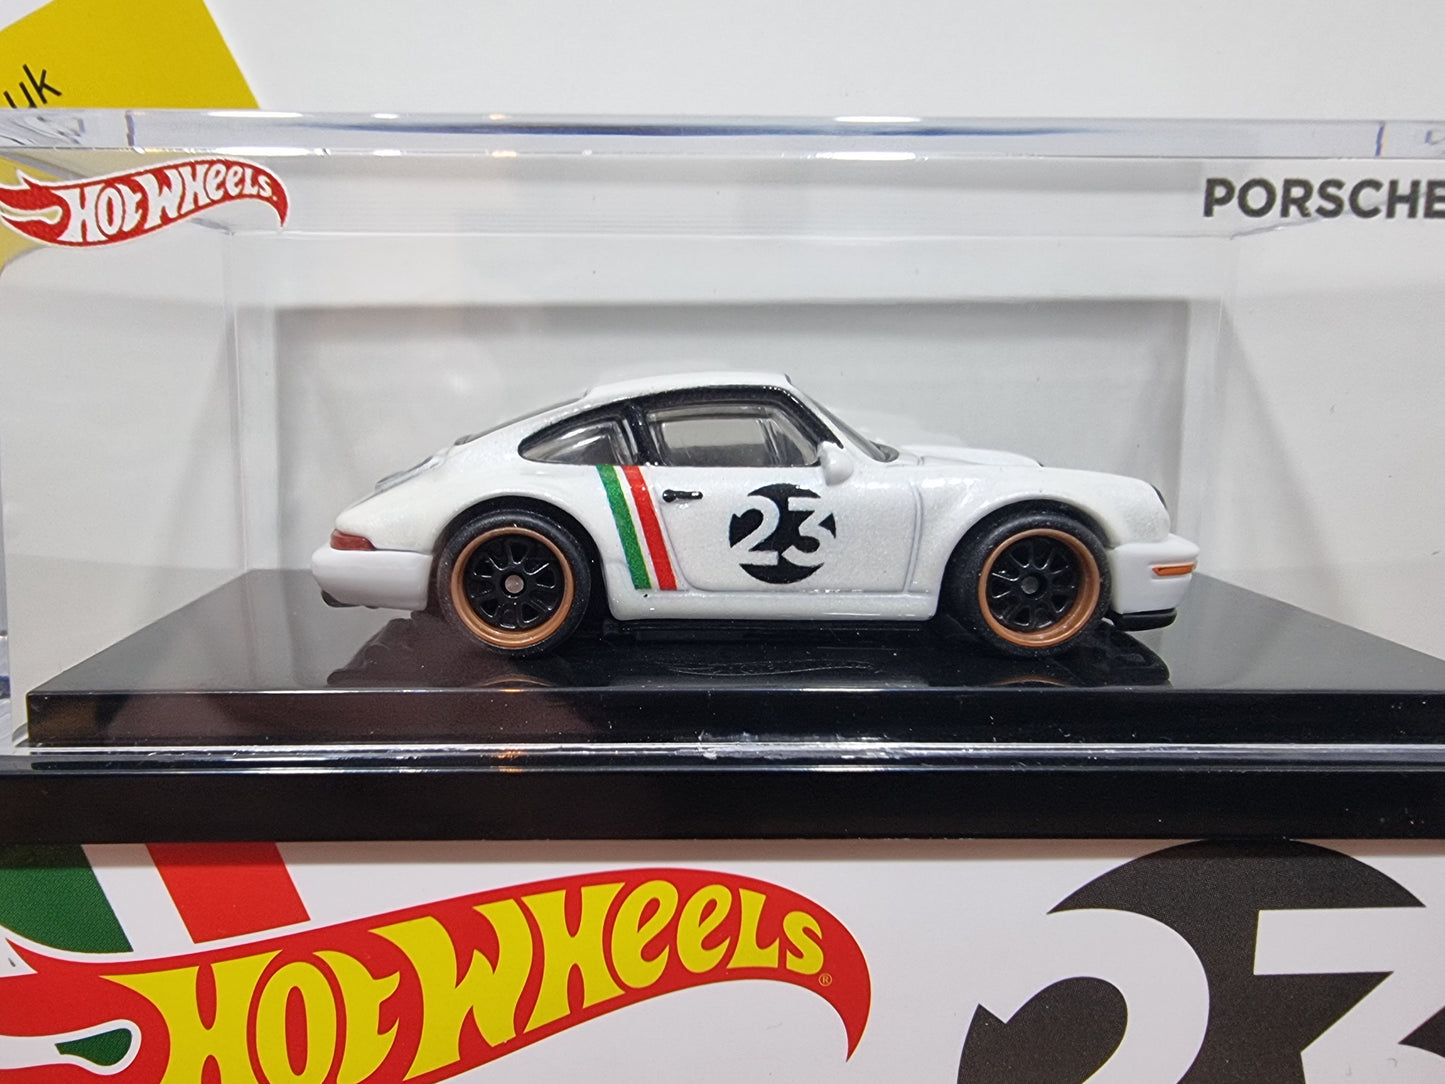 Hot Wheels Porsche 964